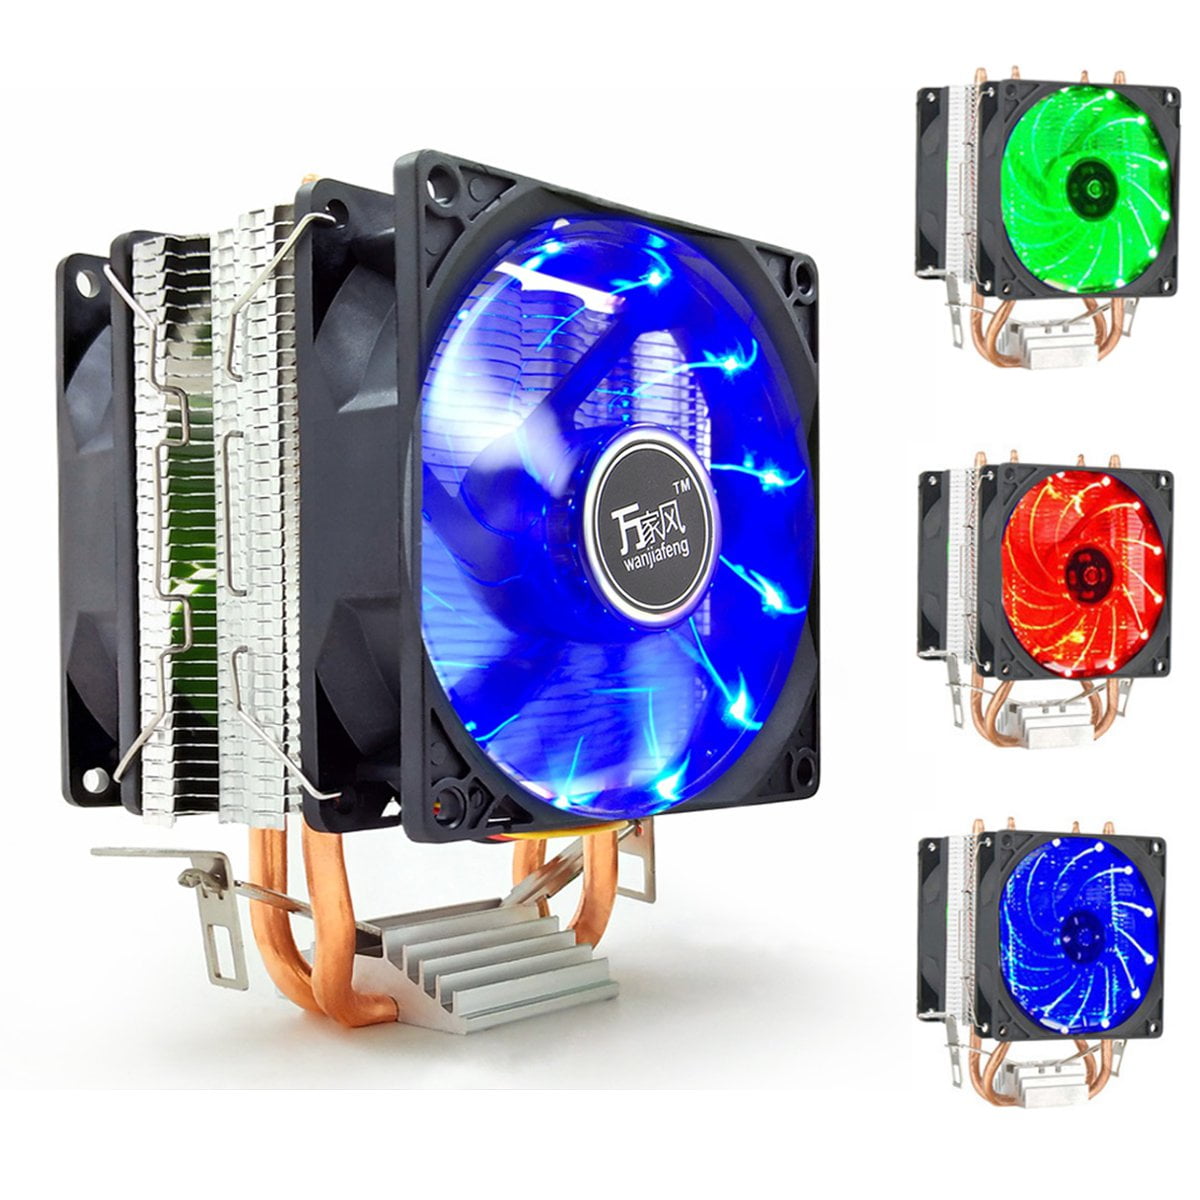 Hot Silent Dual CPU Cooler Heatsink For Intel LGA775/1156 AMD AM2+/AM3/AM4 Ryzen 